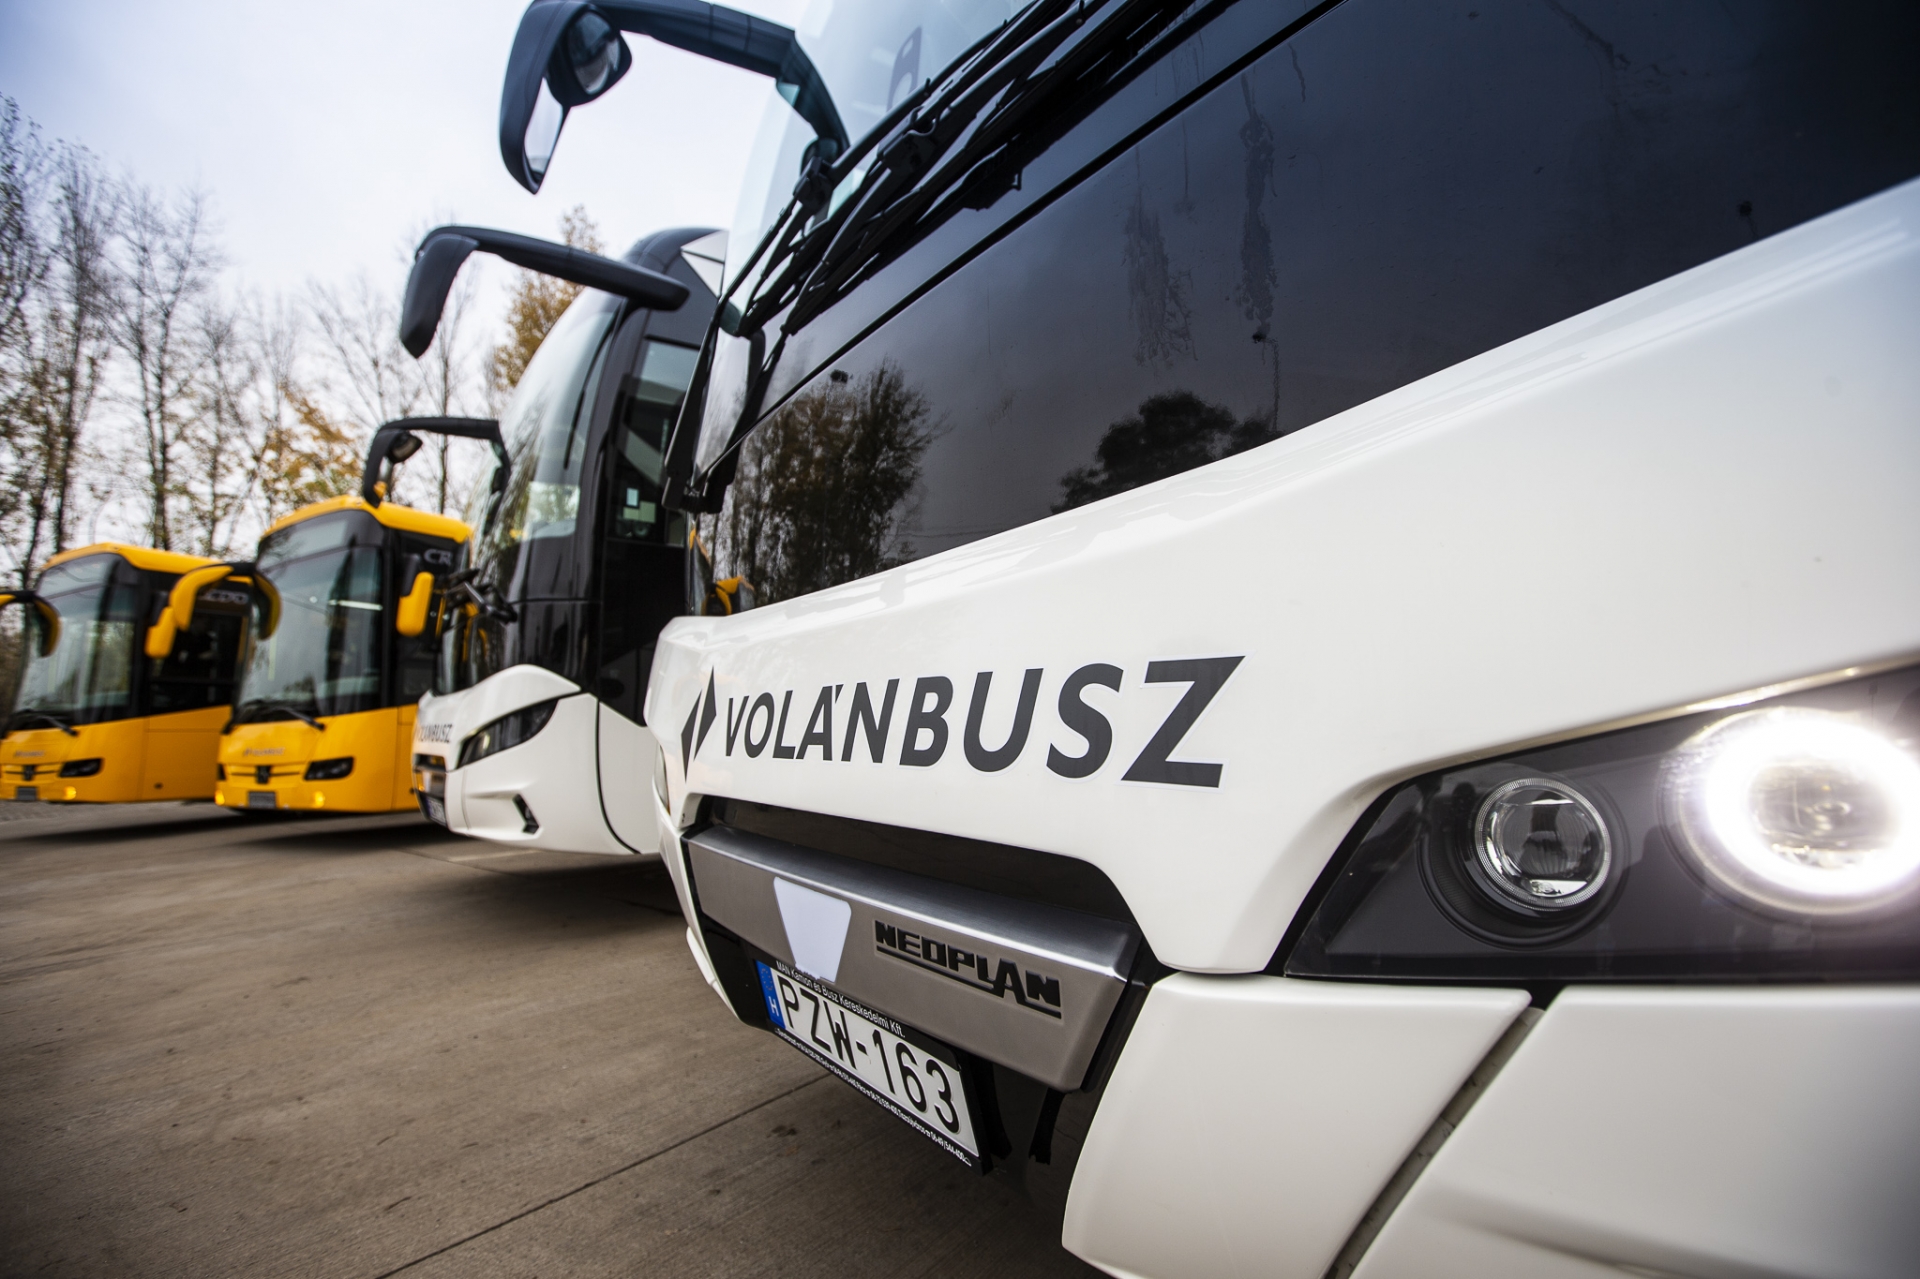 Győrben teszteli a legújabb magyar gyártmányú autóbuszt a Volánbusz